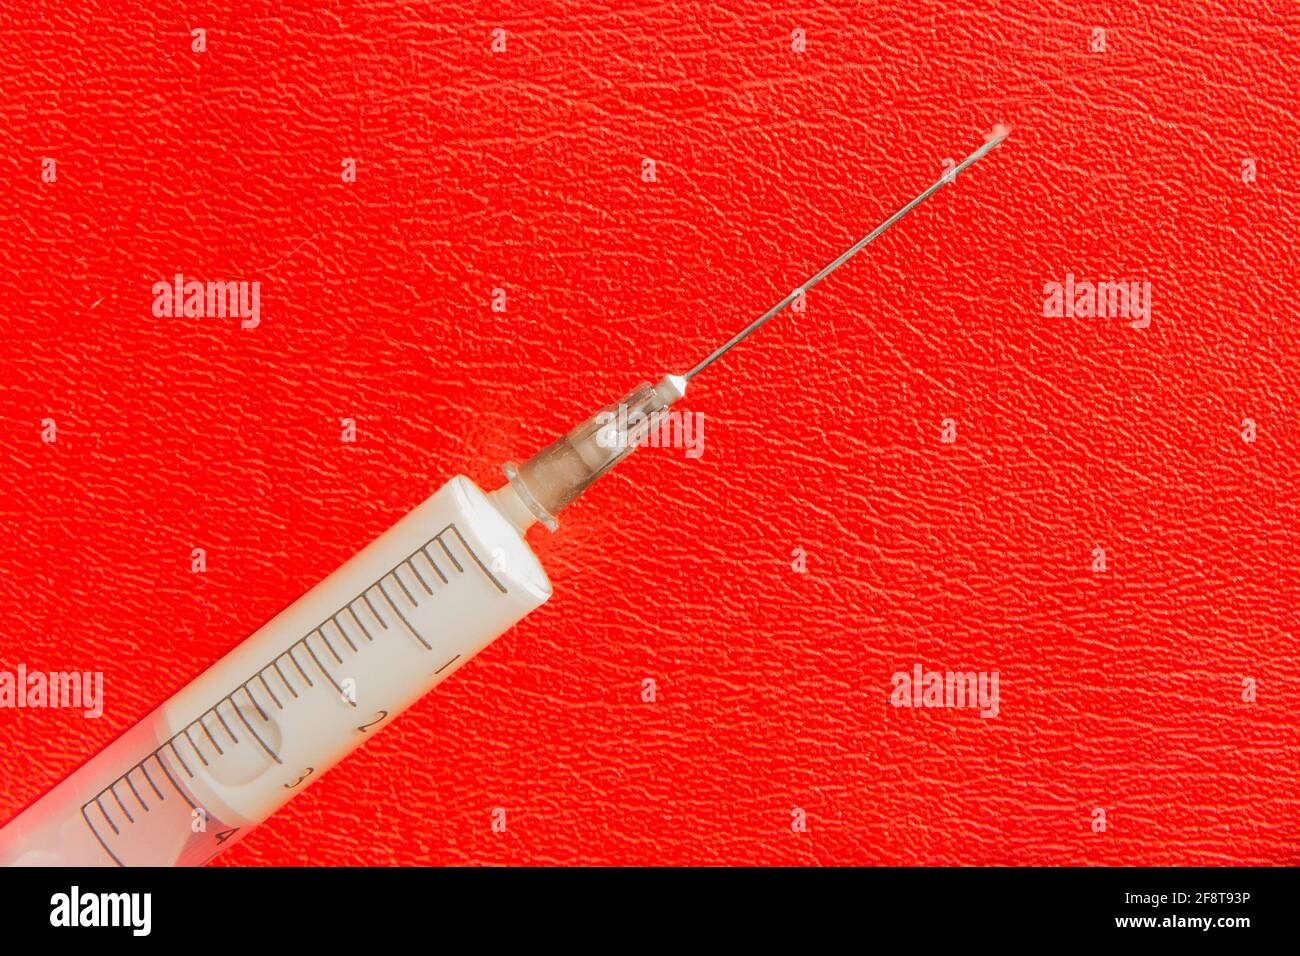 Eine Spritze oder Injektion mit Medikamenten oder Medikamenten liegt auf einem roten Hintergrund. Suchtkonzept. Stockfoto